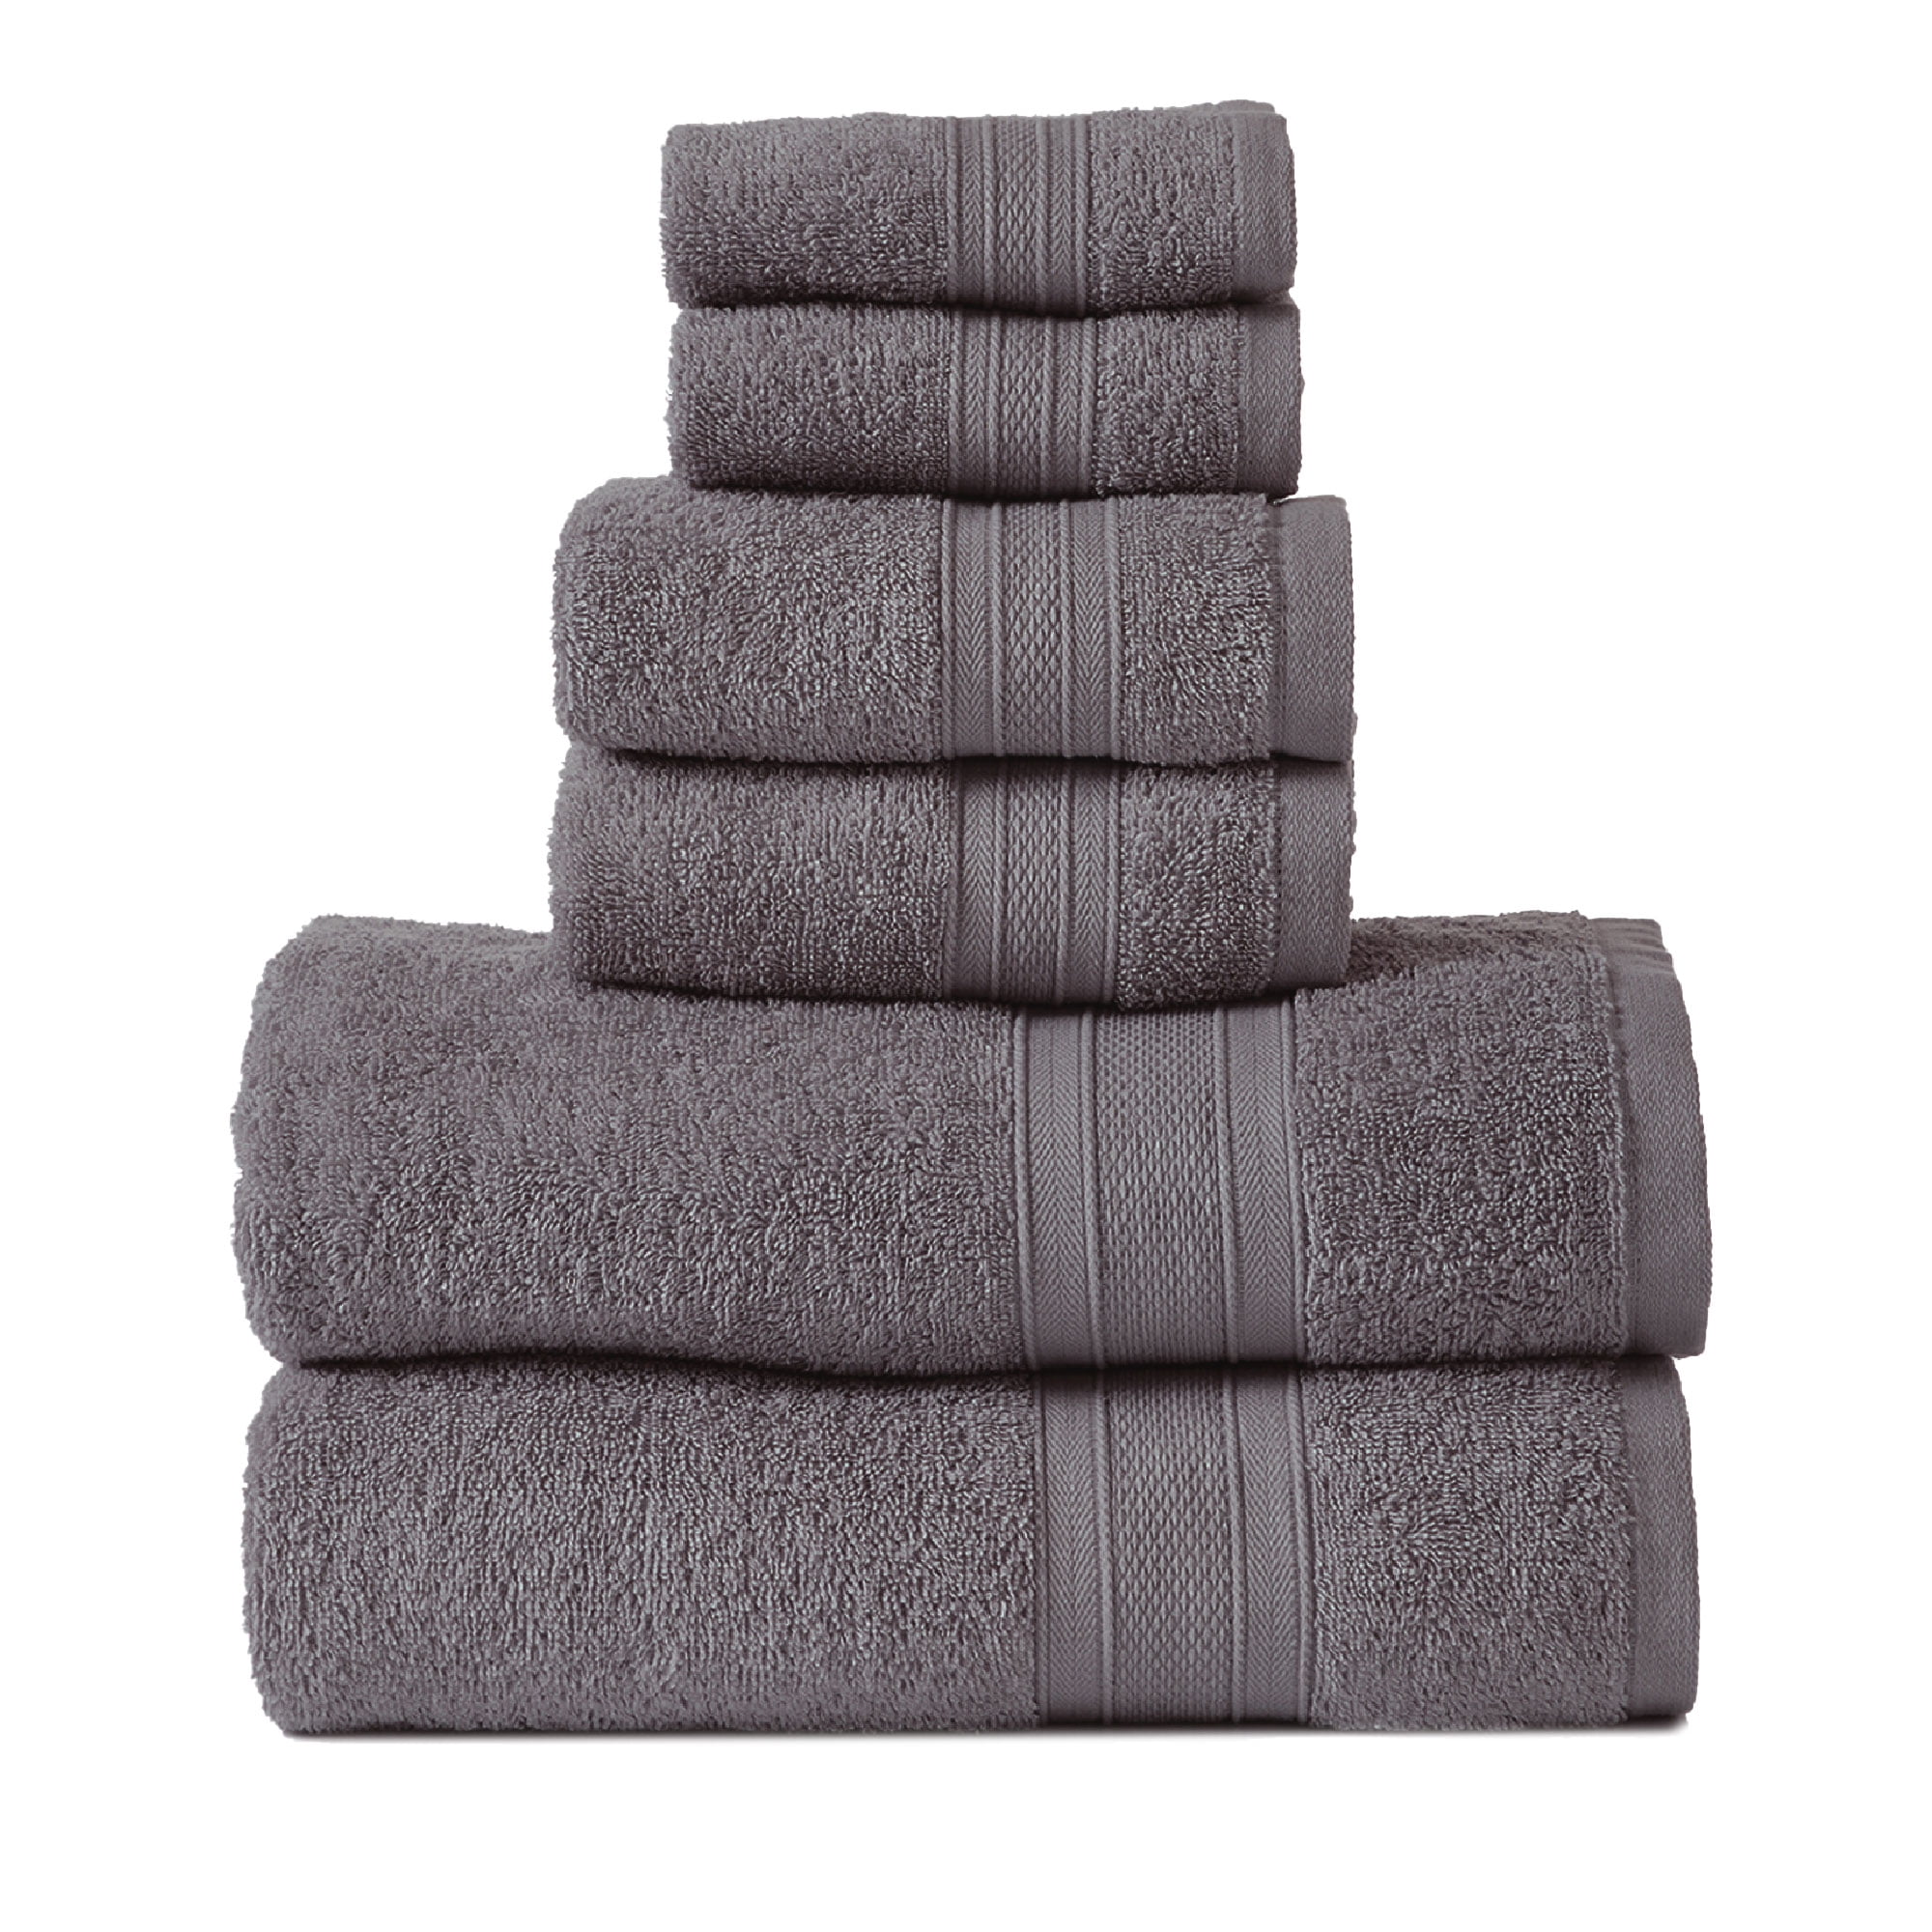 Charcoal Towel Sets 100% Cotton Towel Bale 500 GSM Bathroom 2 3 4 6 Piece Sets 